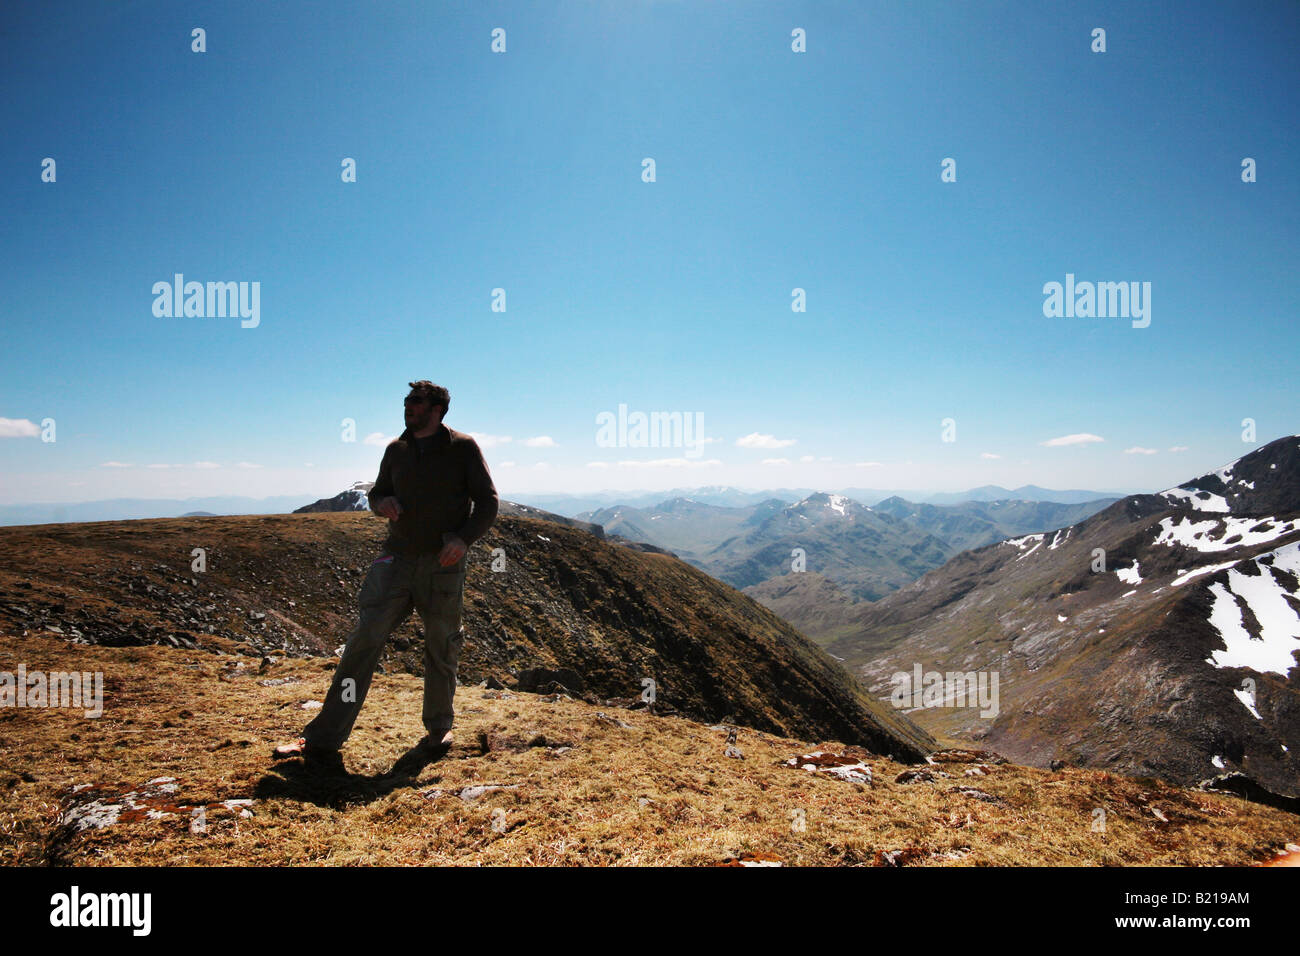 man at summit of mountain Stock Photo